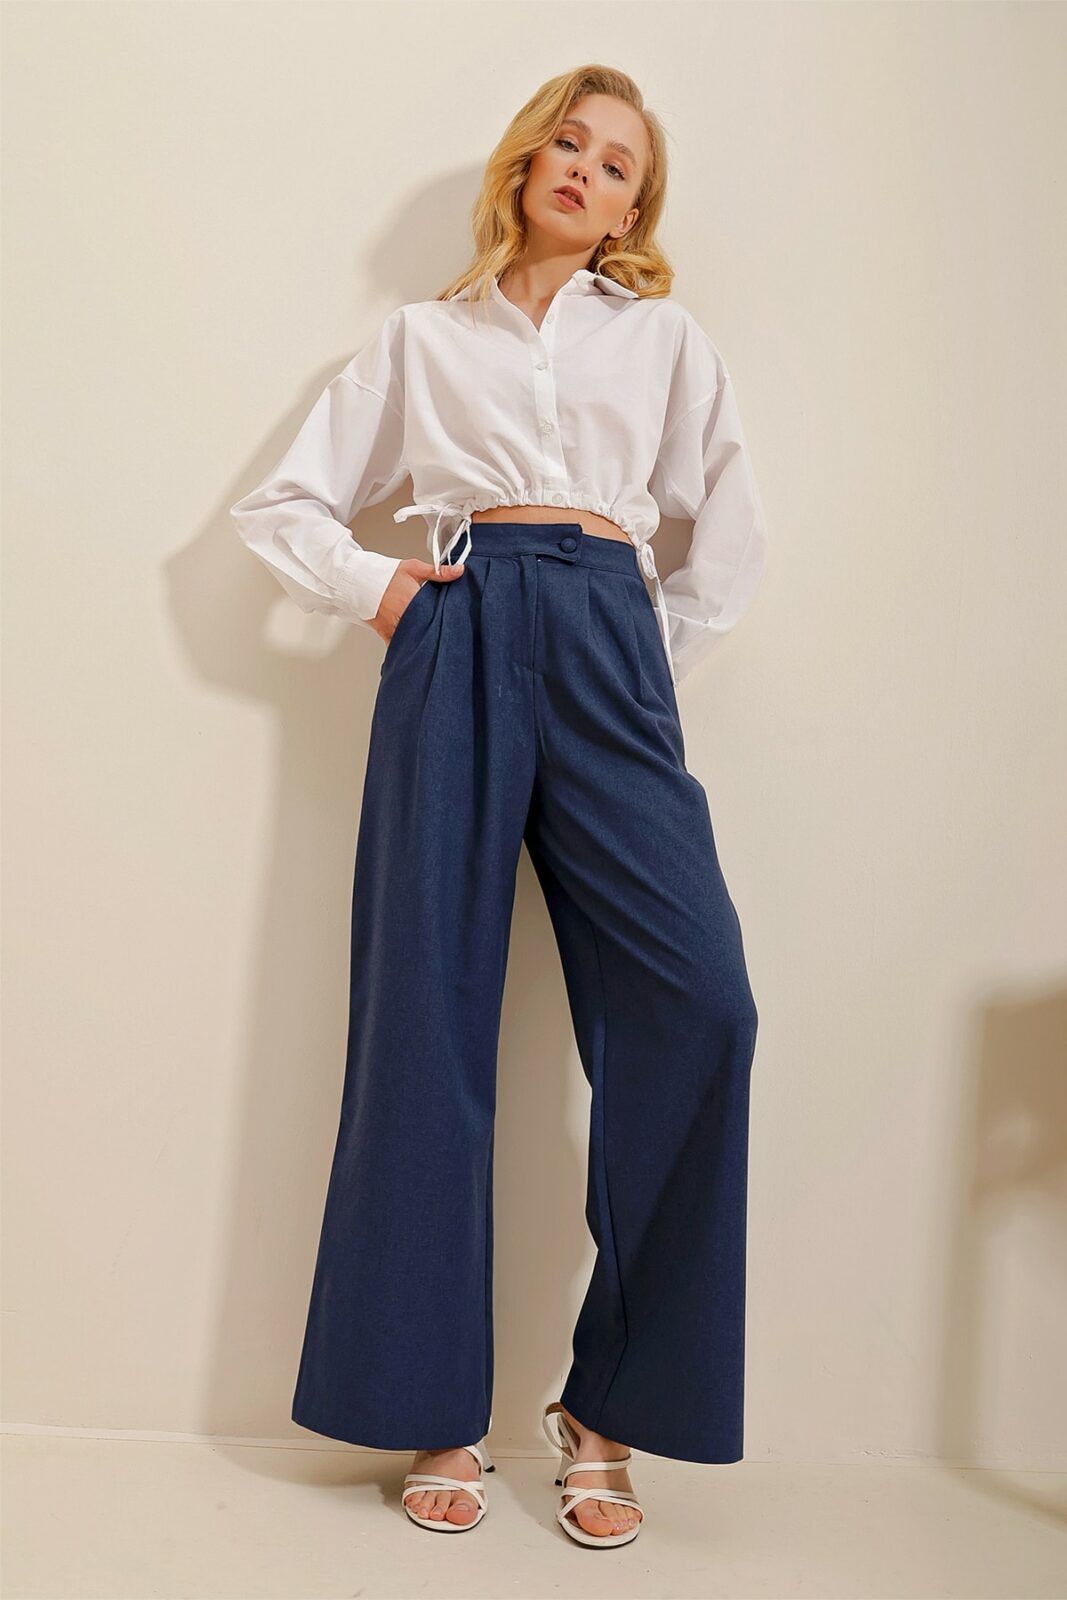 Trend Alaçatı Stili Pants - Navy